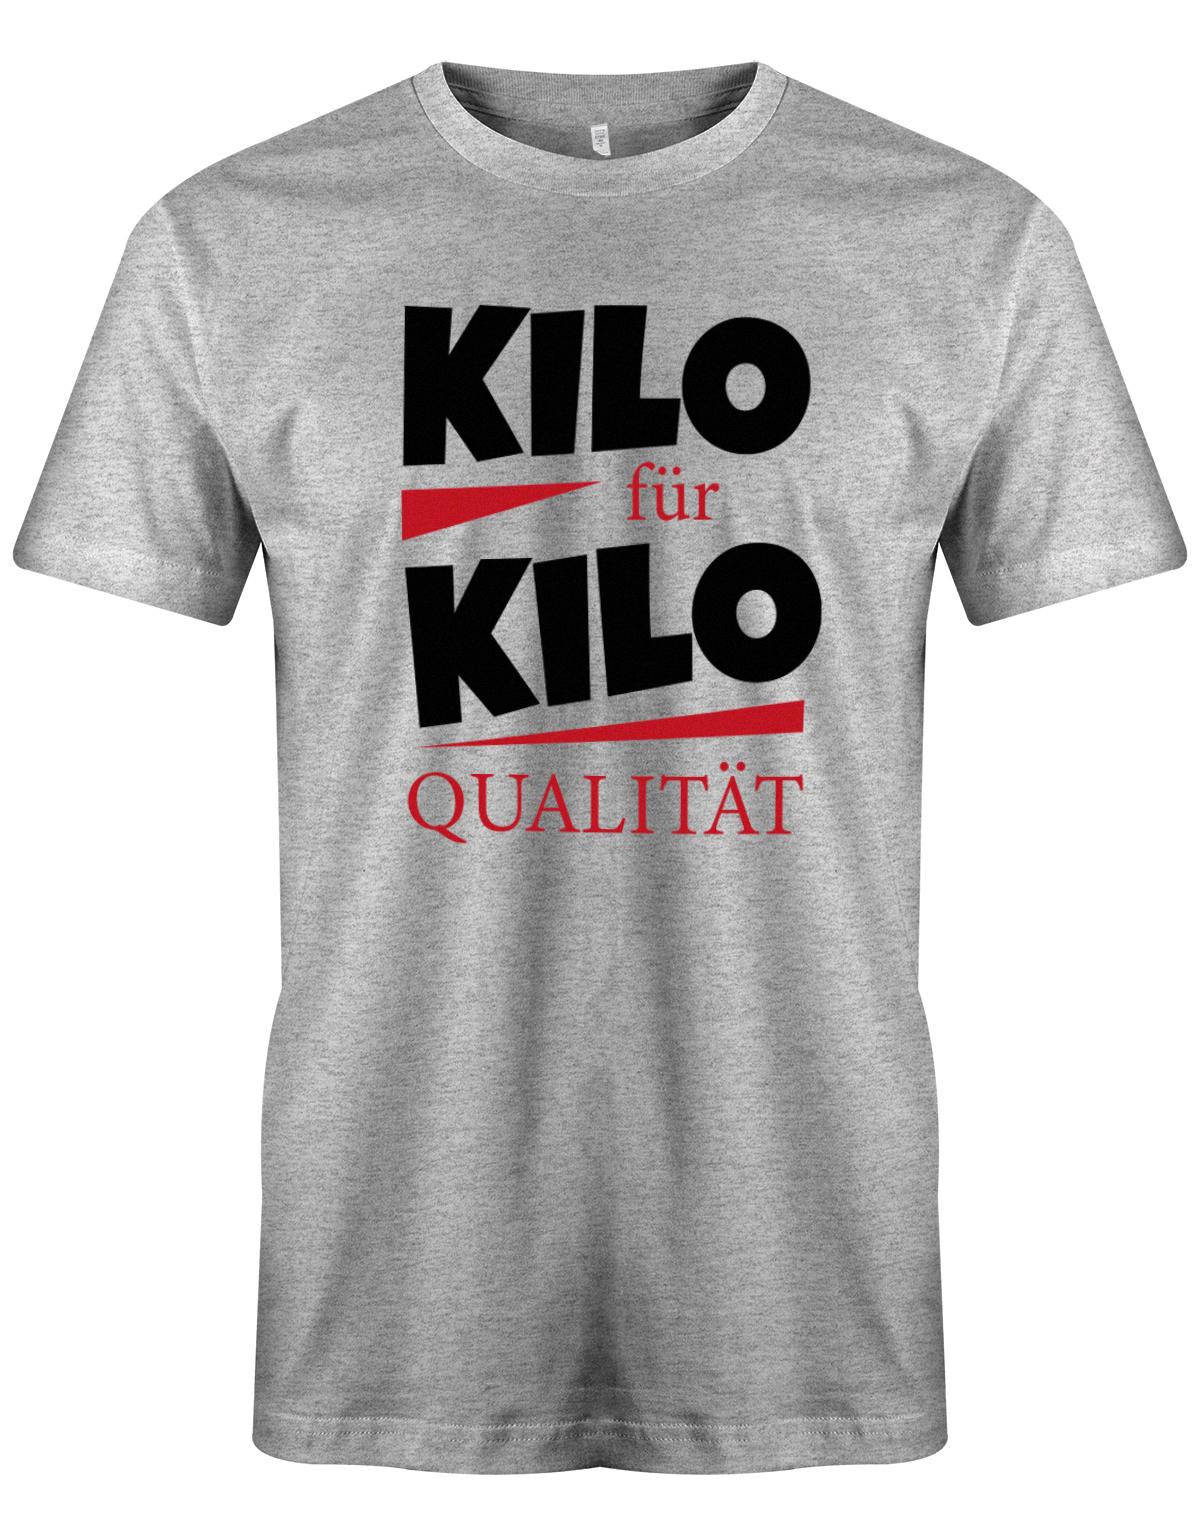 Lustiges Sprüche Shirt - Kilo für Kilo Qualität Grau